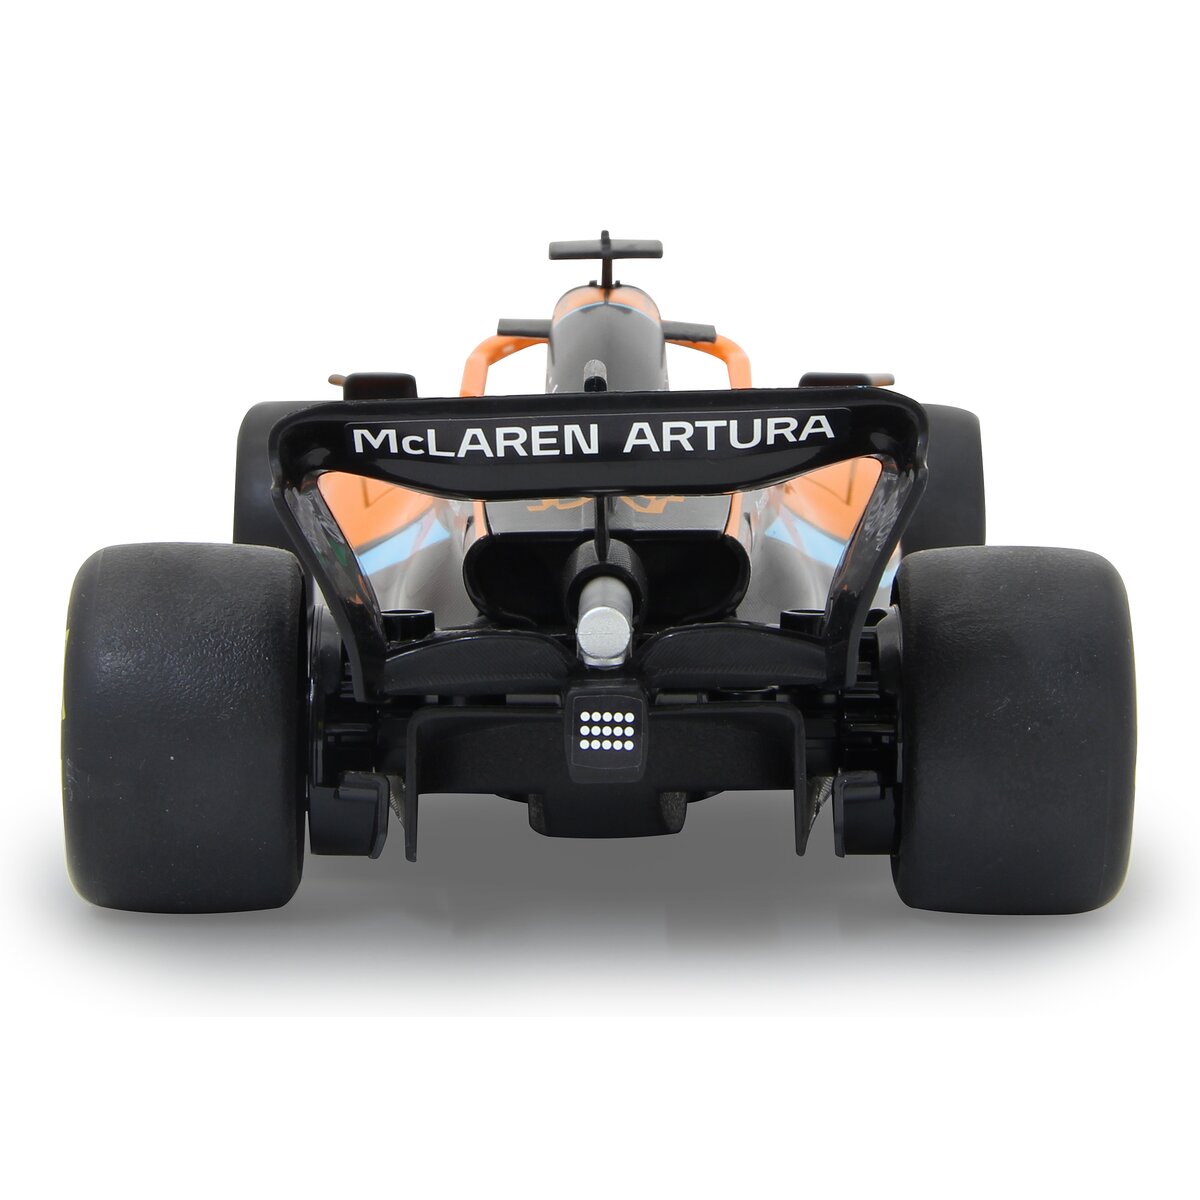 Jamara | McLaren MCL36 | 1:18 | 2,4GHz | orange